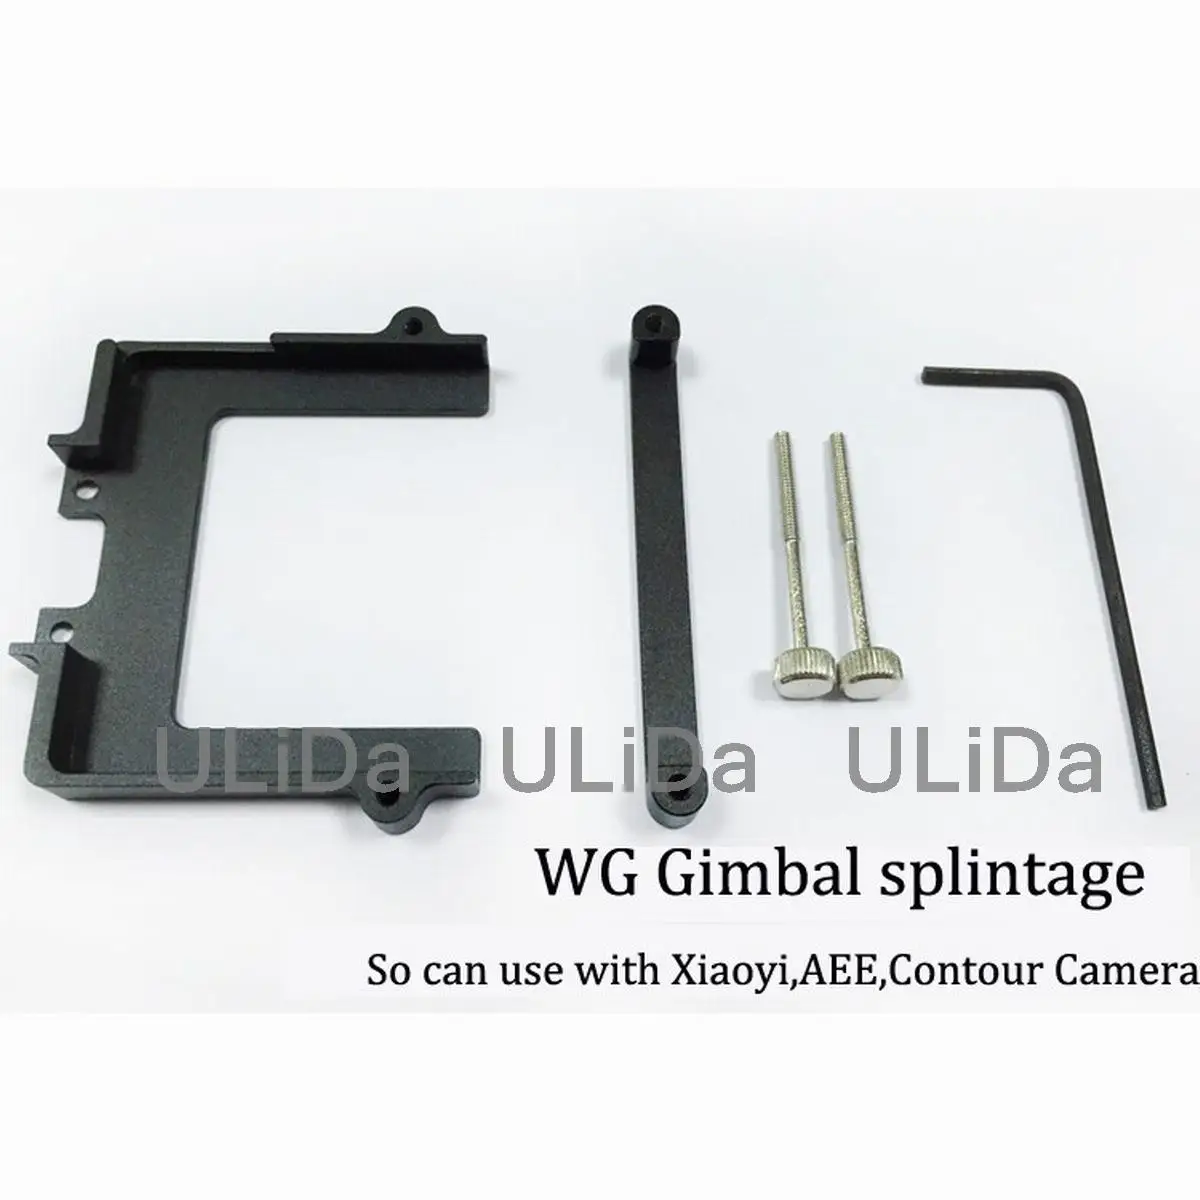 

For Feiyu WG Wearable Gimbal Replace Hanging Board Plate Adapter Mount FeiyuTech Splintage for Xiaomi Yi SJ AEE Sports Camera